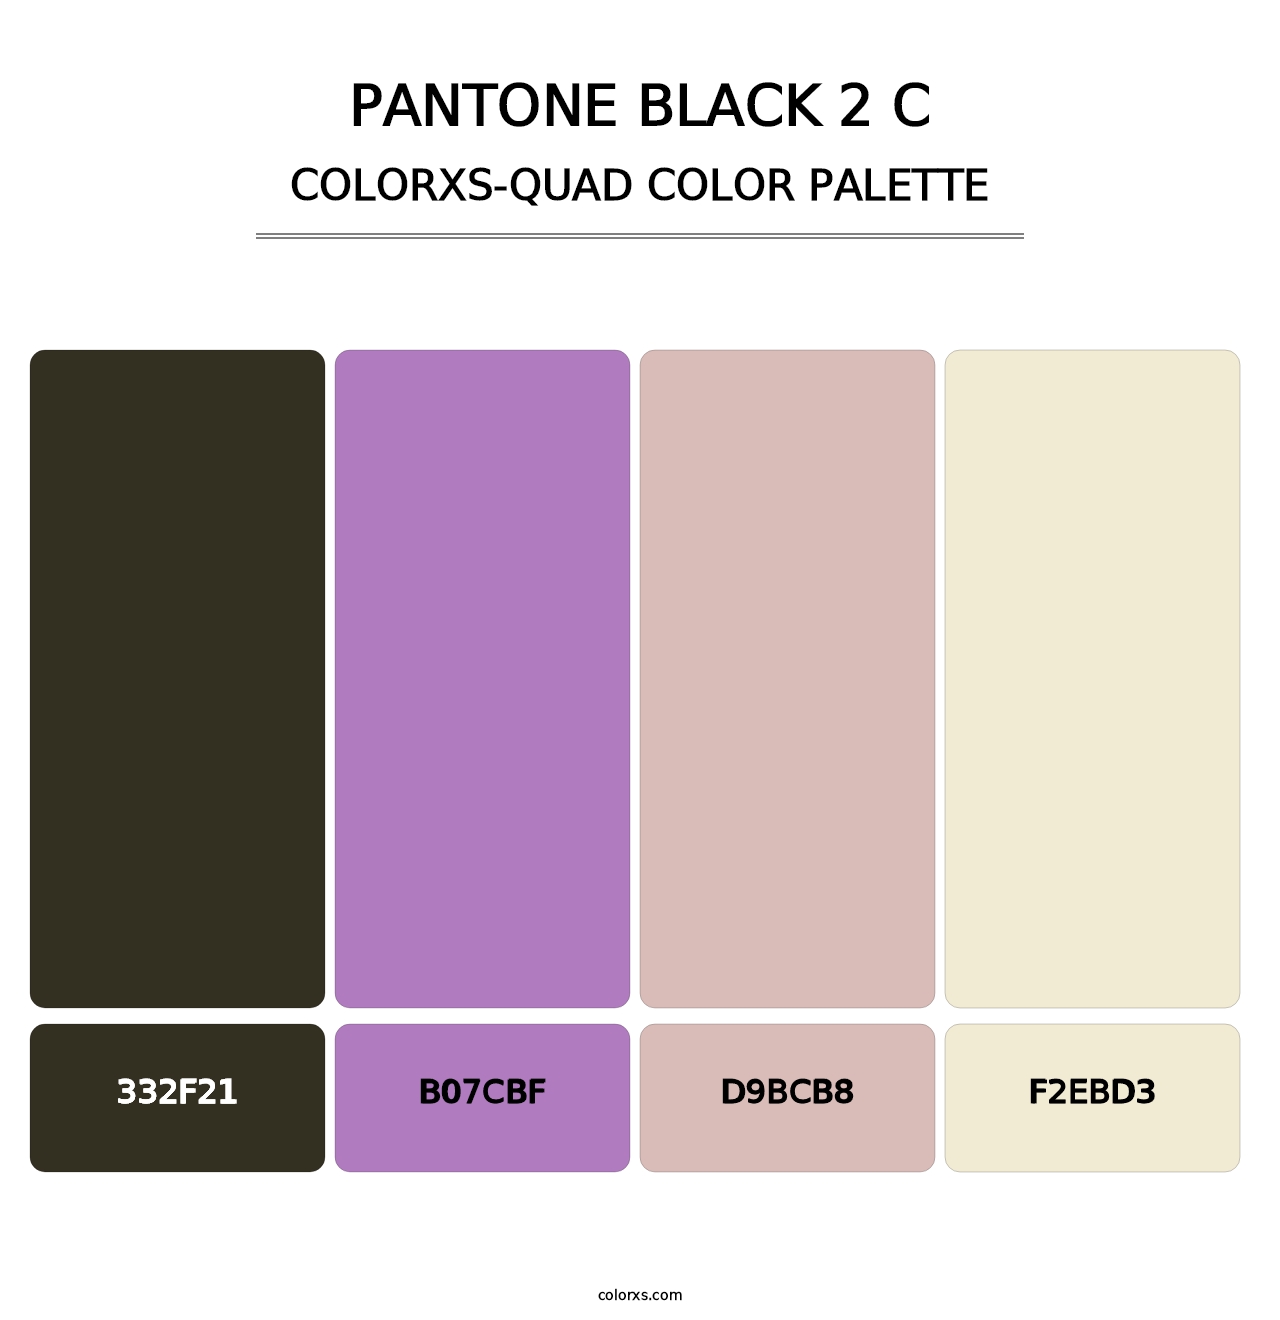 PANTONE Black 2 C - Colorxs Quad Palette